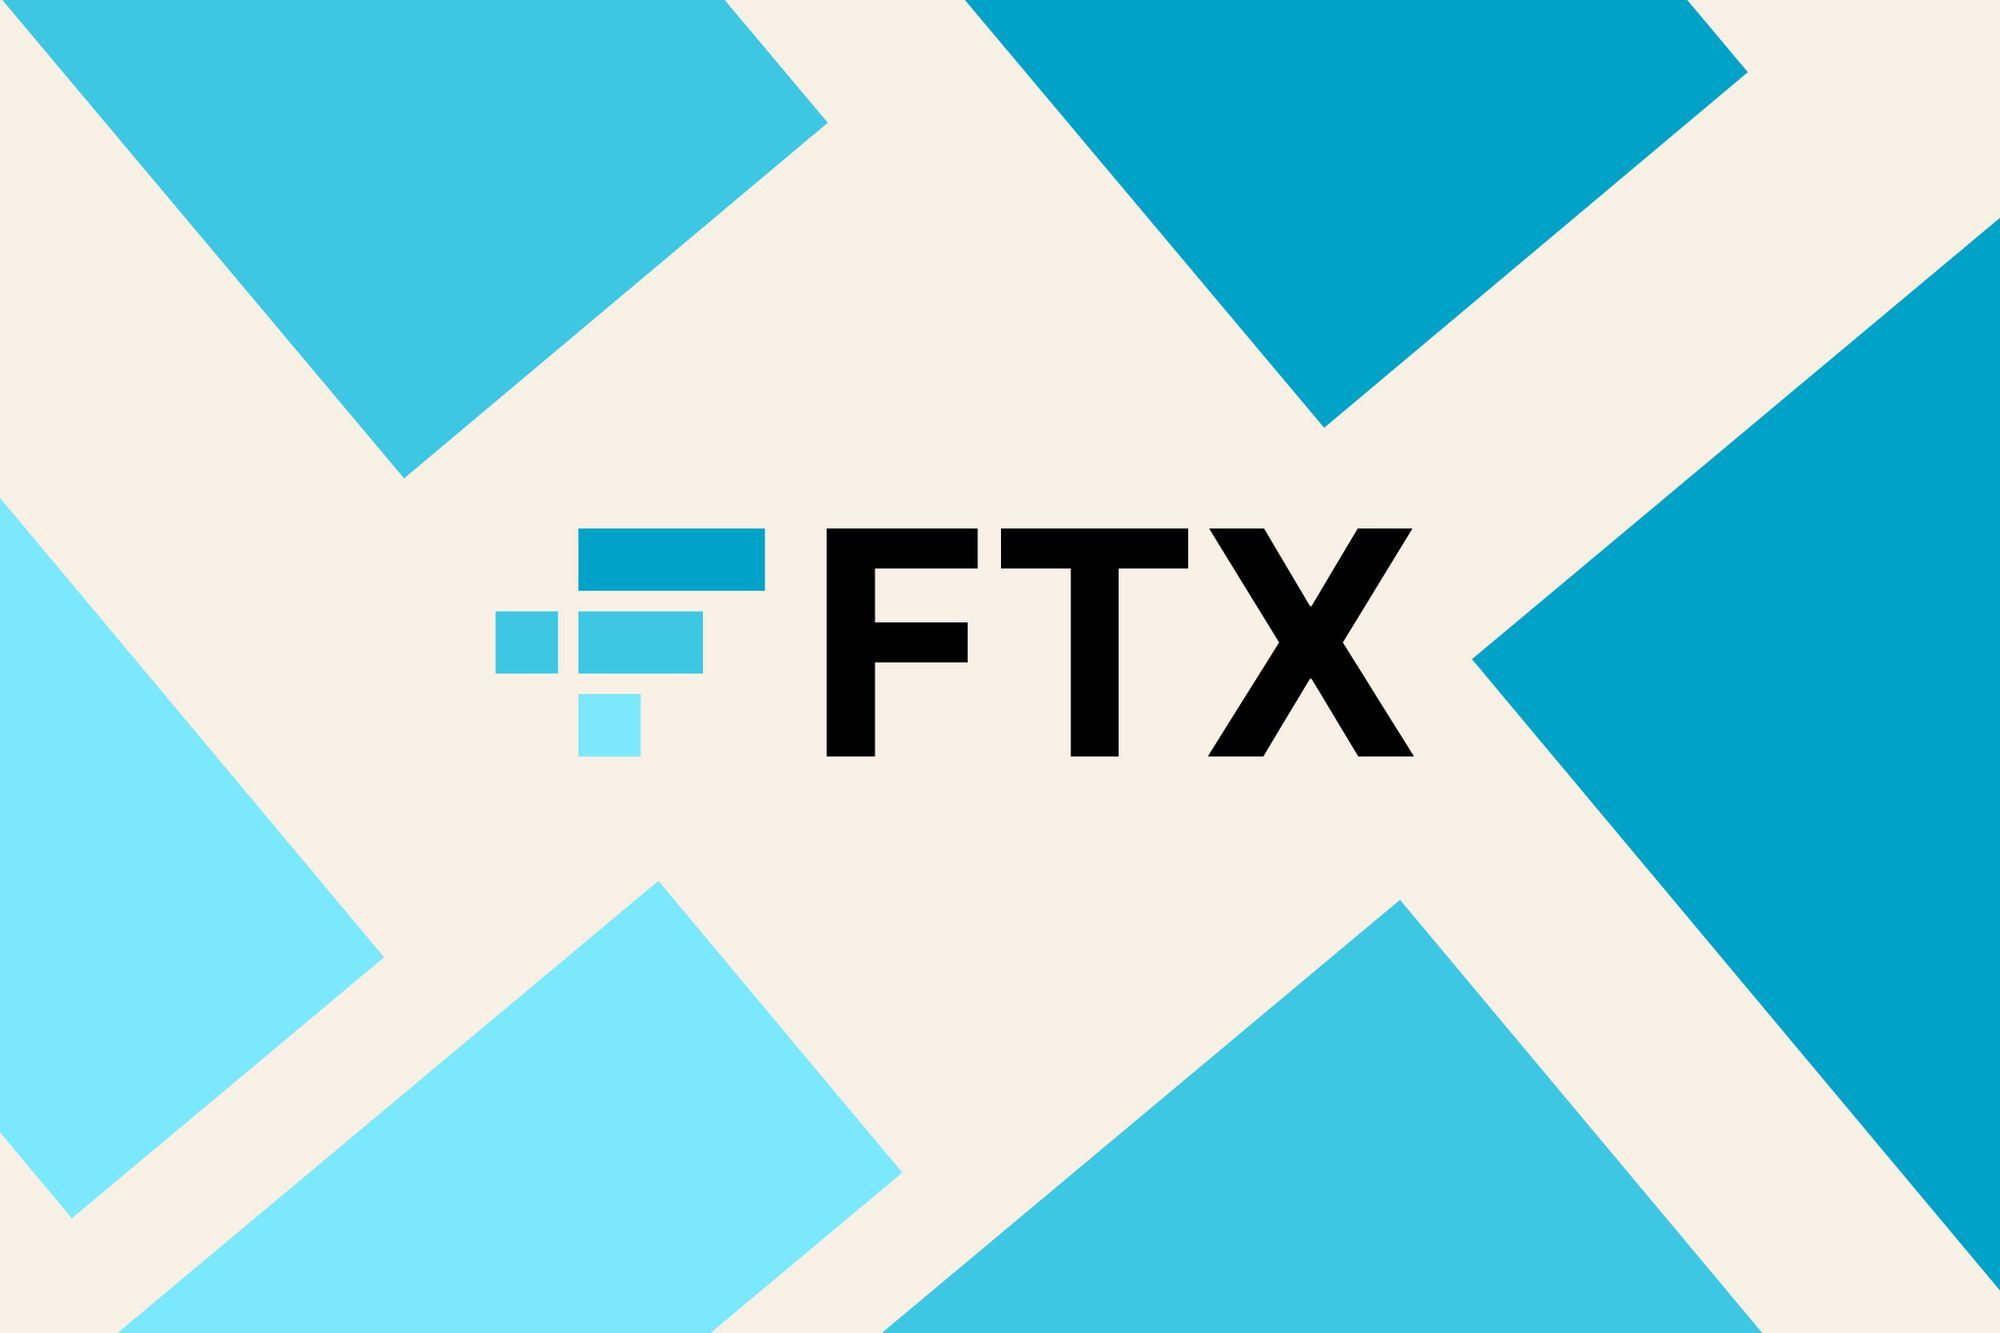 اف تي اكس FTX تعطي الضوء الأخضر لبيع 873 مليون دولار من الأصول التي تديرها جراي سكيل Grayscale و بيتوايز Bitwise